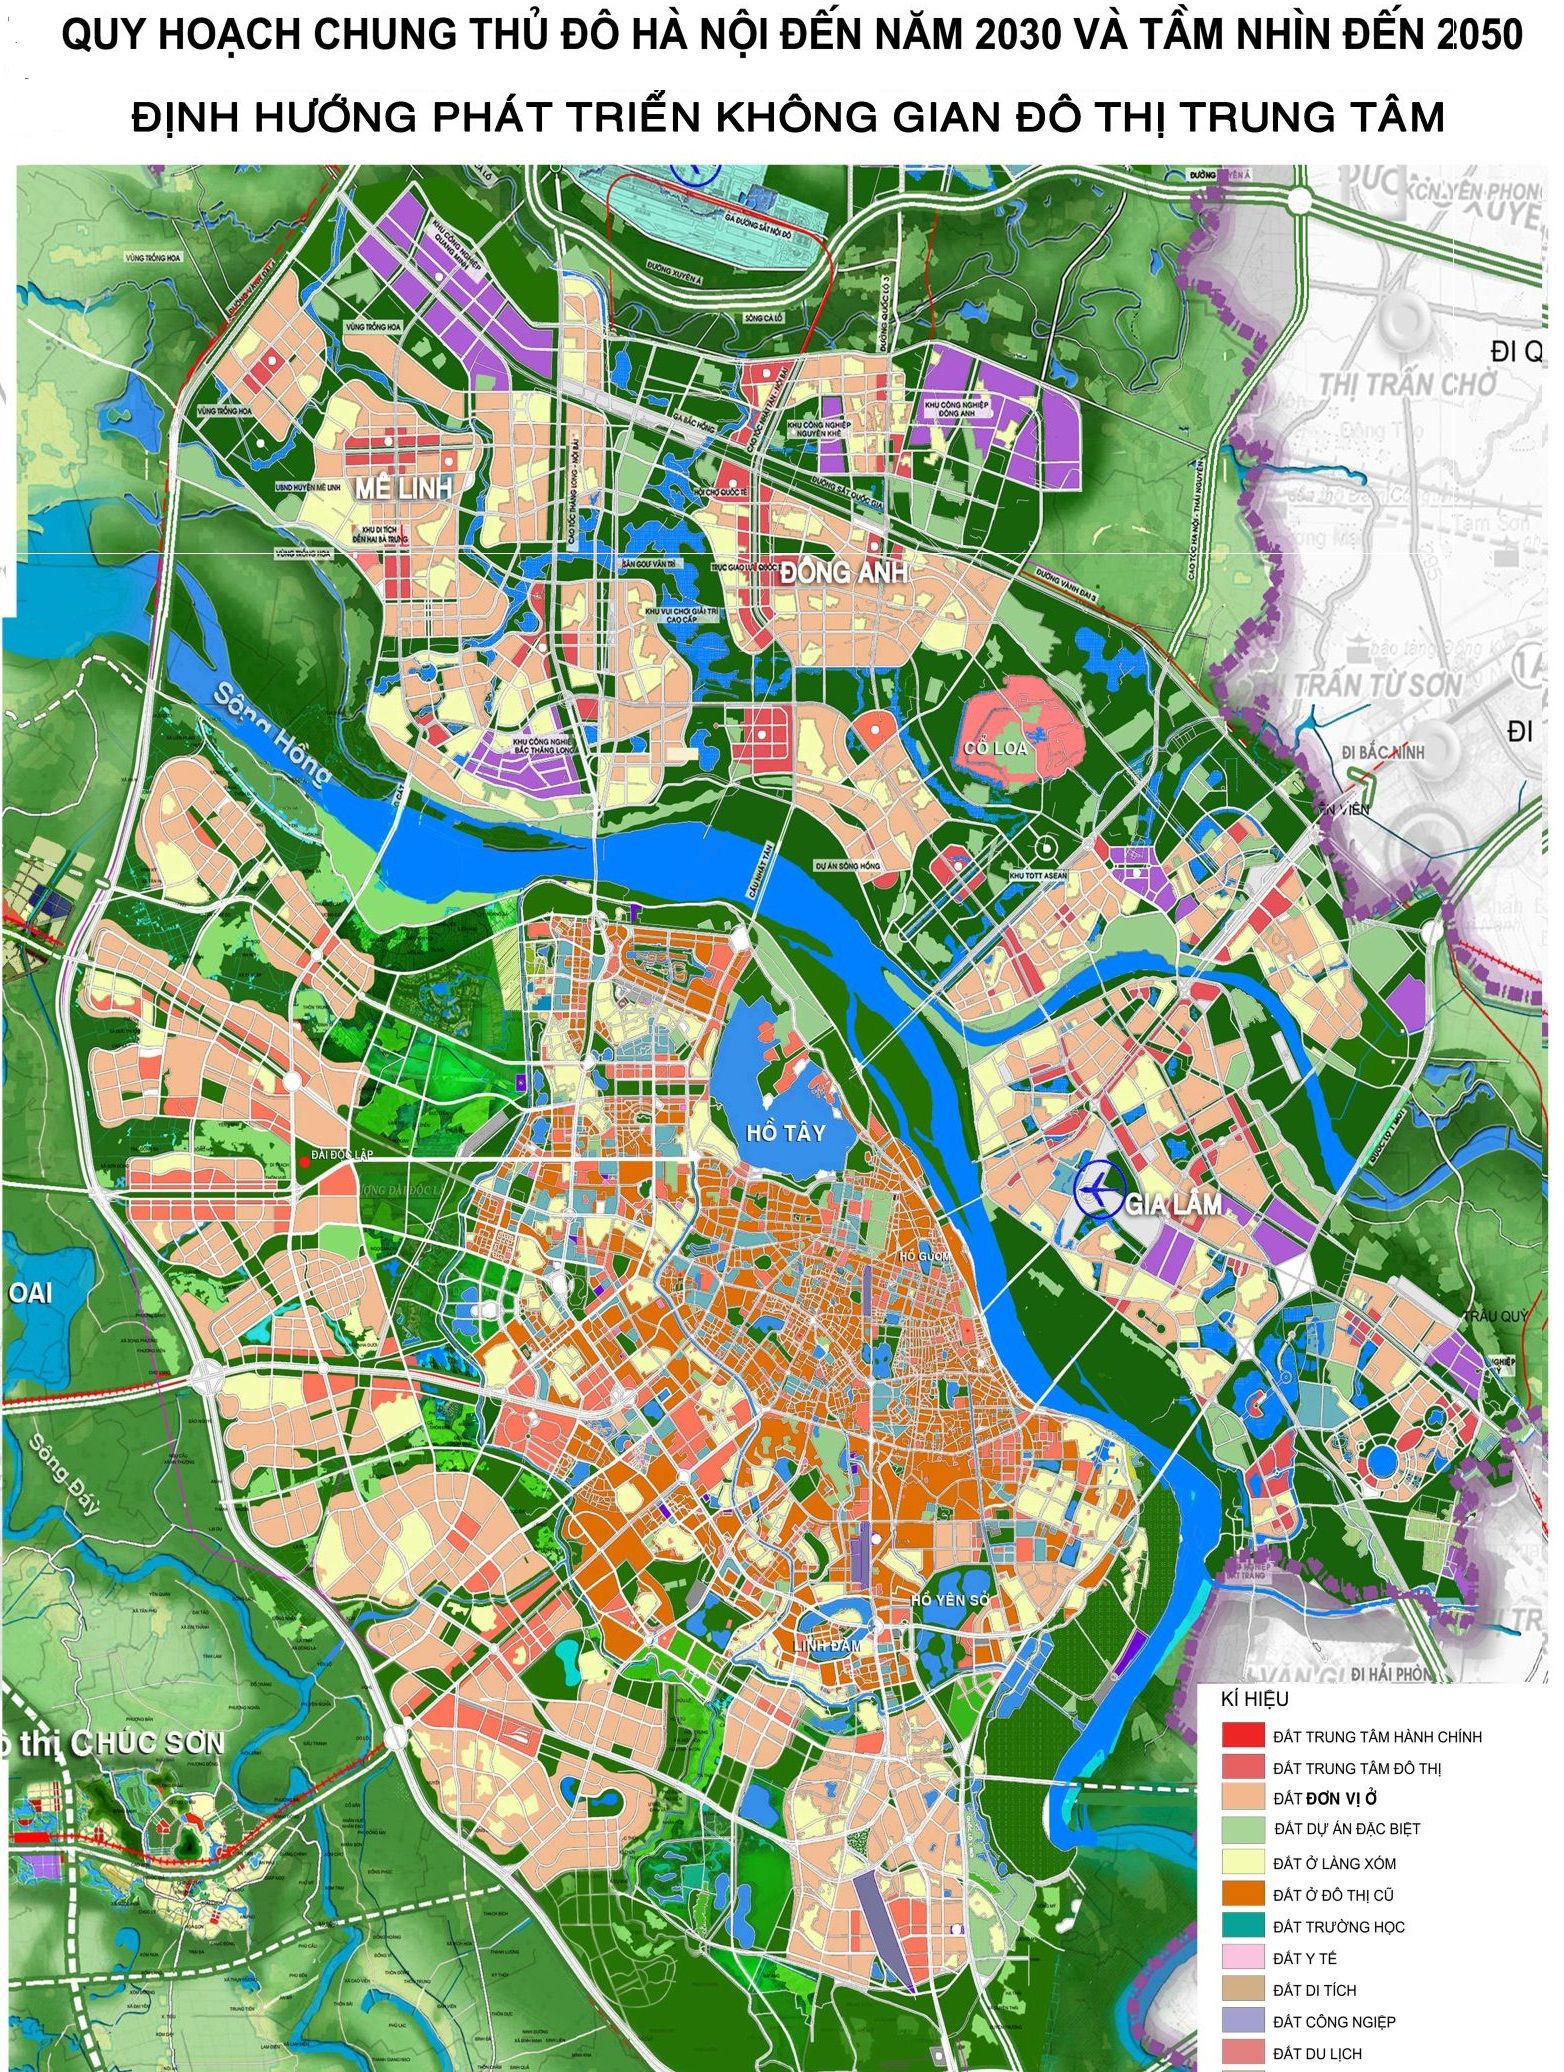 Năm 2024, quy hoạch Hà Nội đang trên đà phát triển vượt bậc và sự thay đổi của thủ đô sẽ là một trong những bất ngờ đầy kích thích đối với bạn. Hãy cùng chúng tôi trải nghiệm và khám phá những hình ảnh mới về thủ đô Hà Nội.